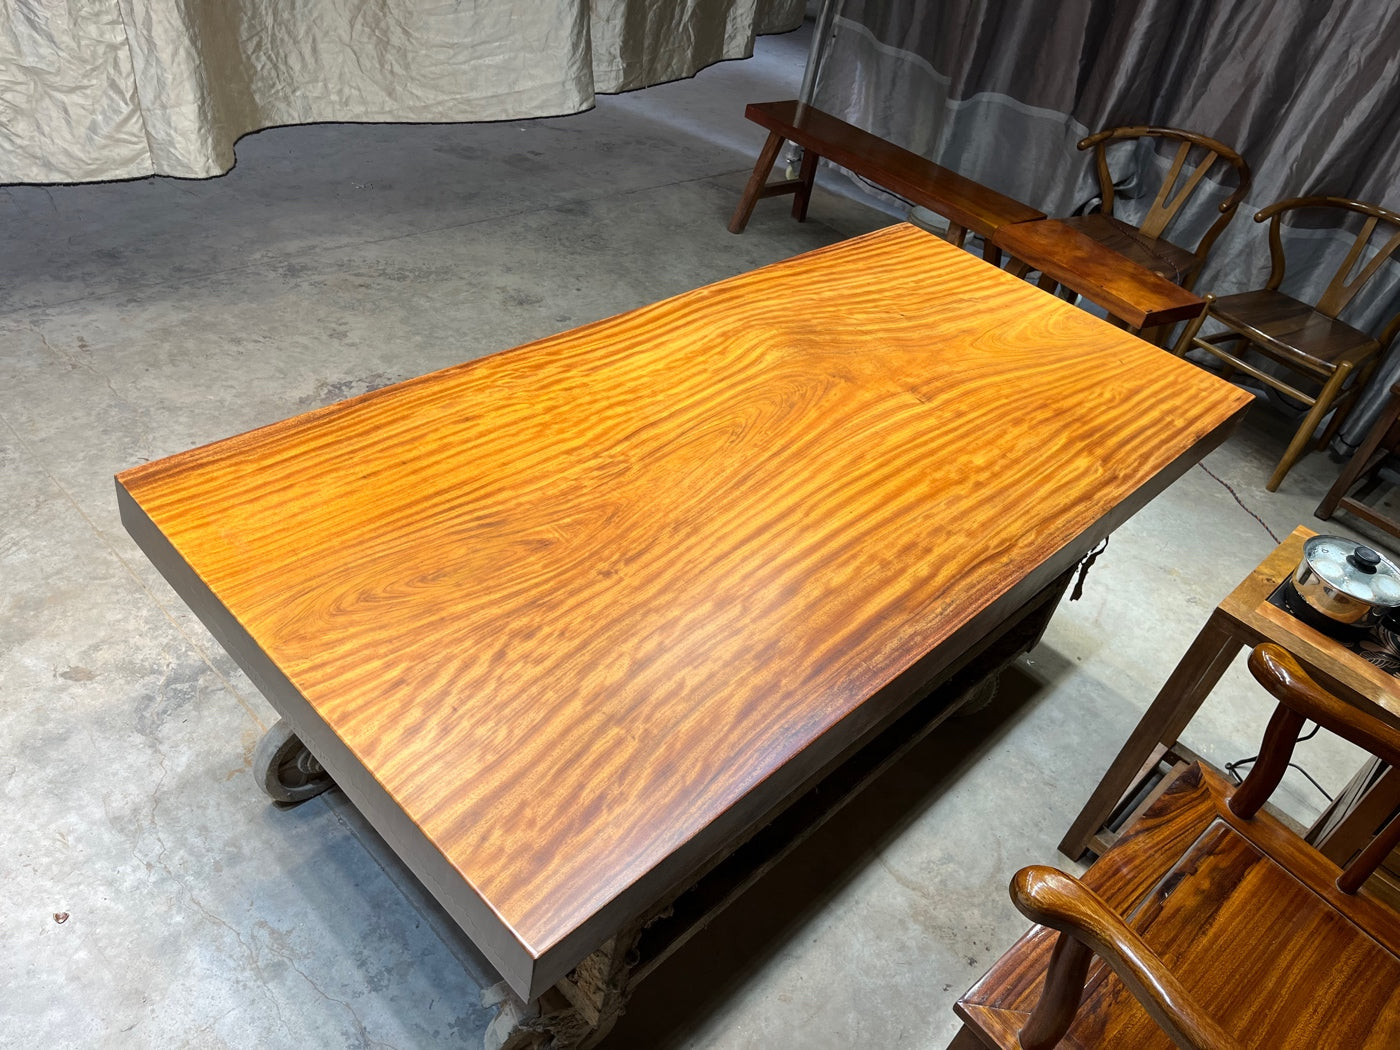 Tavolino da caffè con lastra di legno africano, <tc>Tali wood</tc>tavolo con lastra, lastre con bordo vivo per tavoli